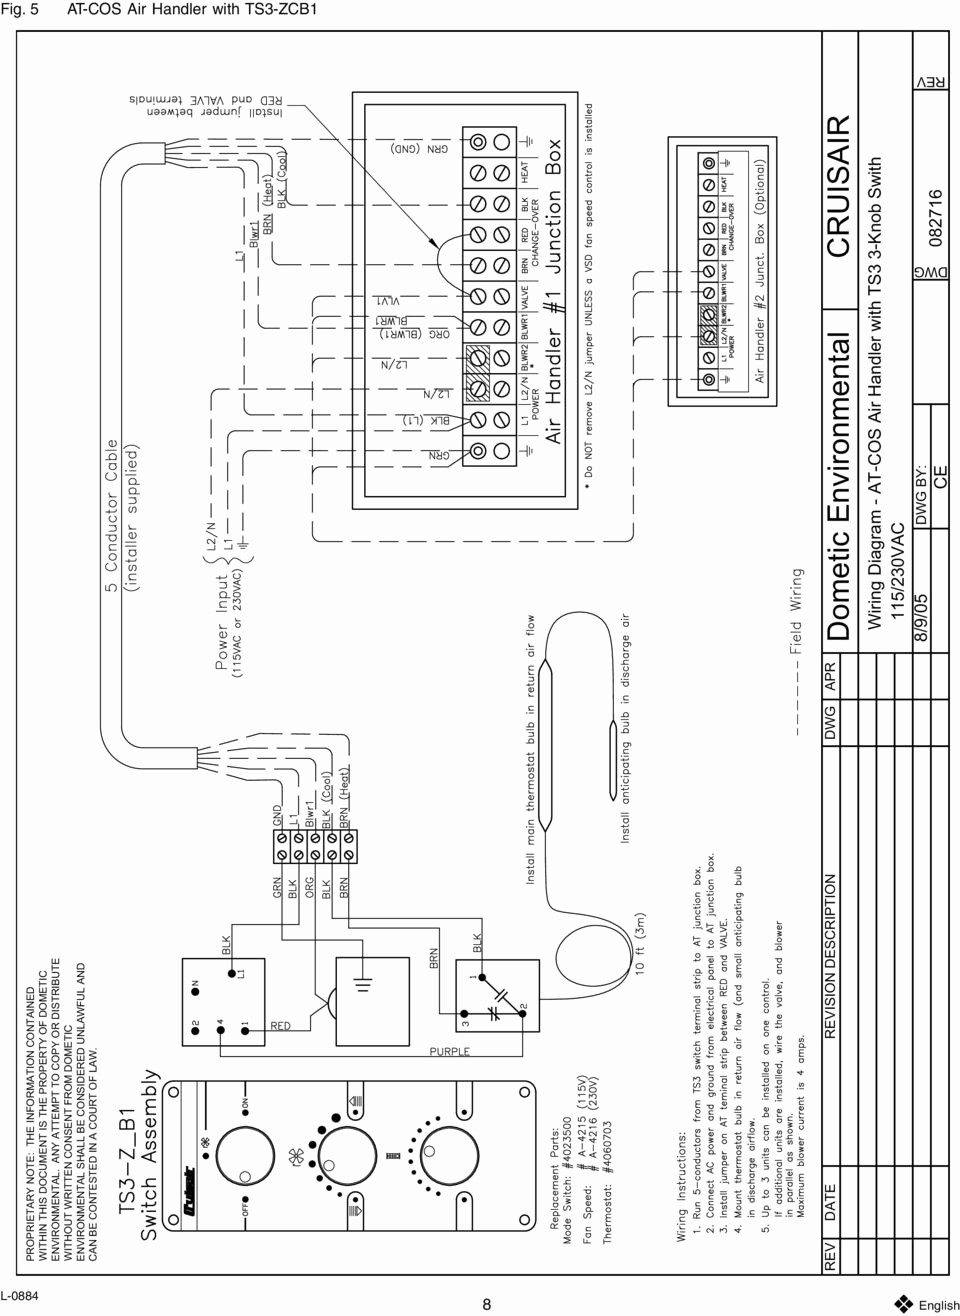 Air Handler Wiring Diagram Luxury Inspirational Goodman Air Handler Wiring Diagram 32 for 2000 Mercury